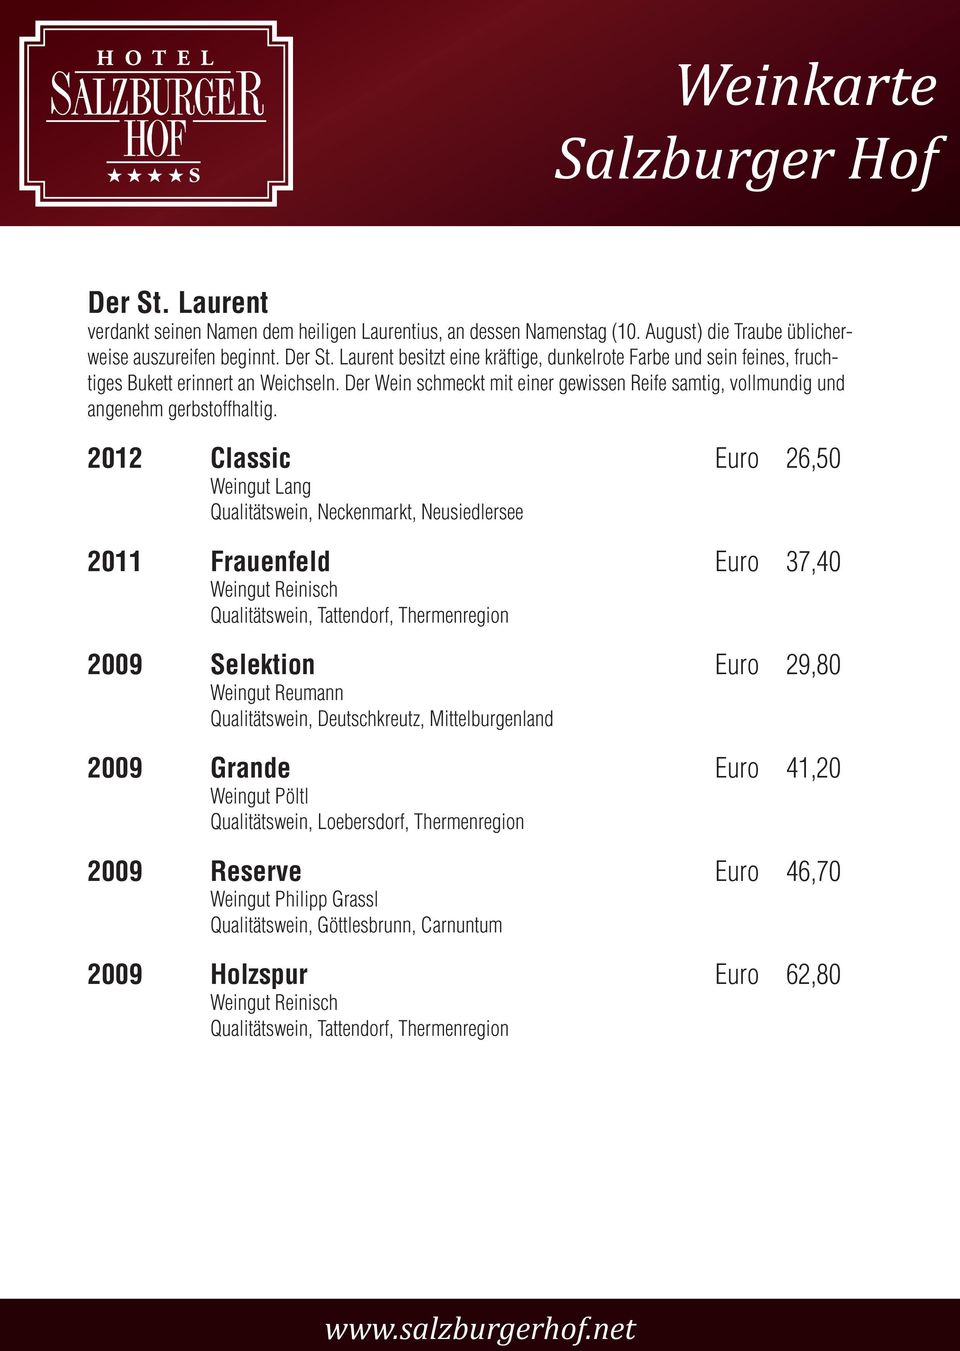 2012 Classic Euro 26,50 Weingut Lang Qualitätswein, Neckenmarkt, Neusiedlersee 2011 Frauenfeld Euro 37,40 Weingut Reinisch Qualitätswein, Tattendorf, Thermenregion 2009 Selektion Euro 29,80 Weingut